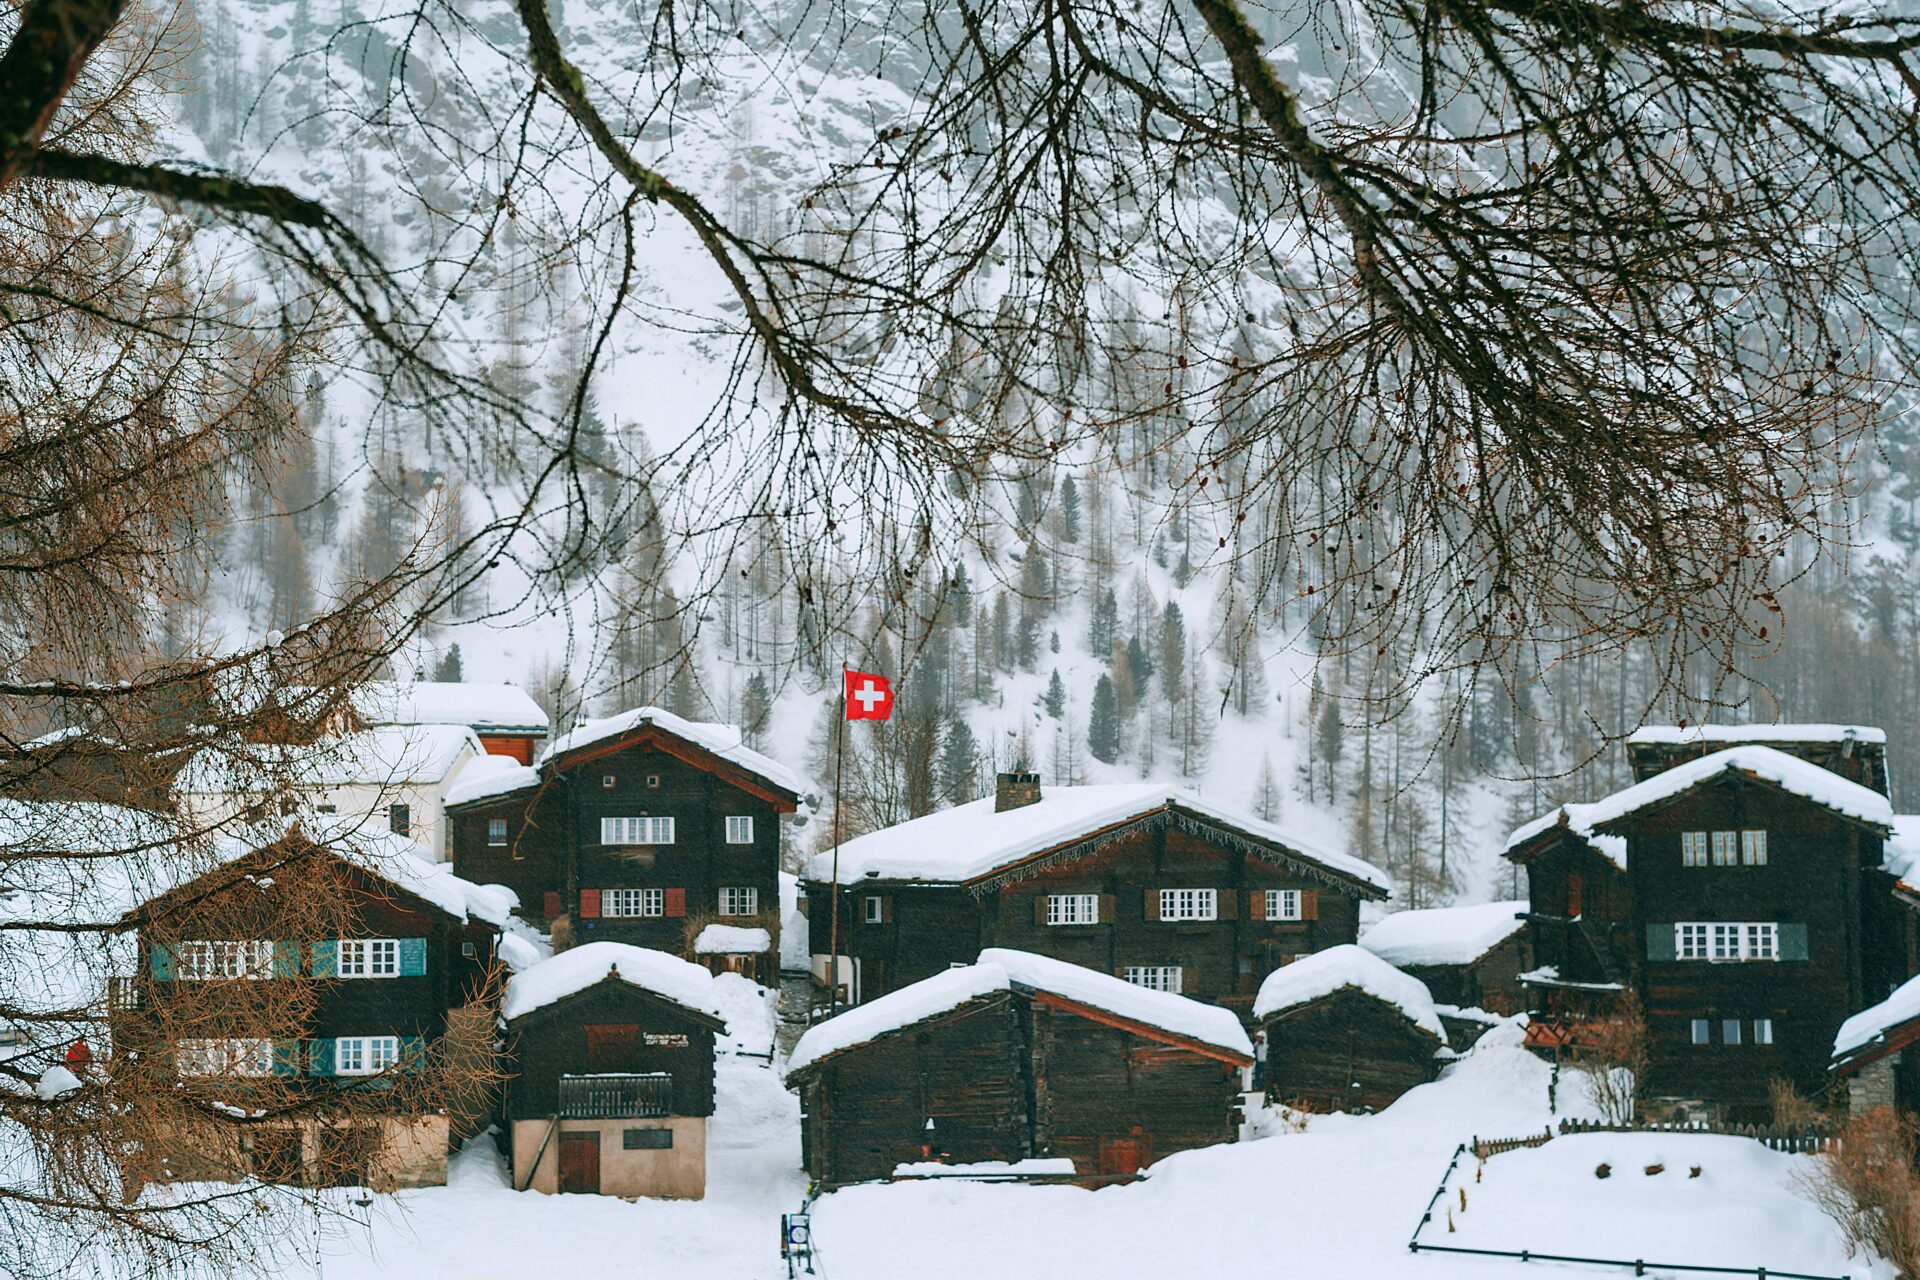 Paisaje nevado con la bandera de Switzerland